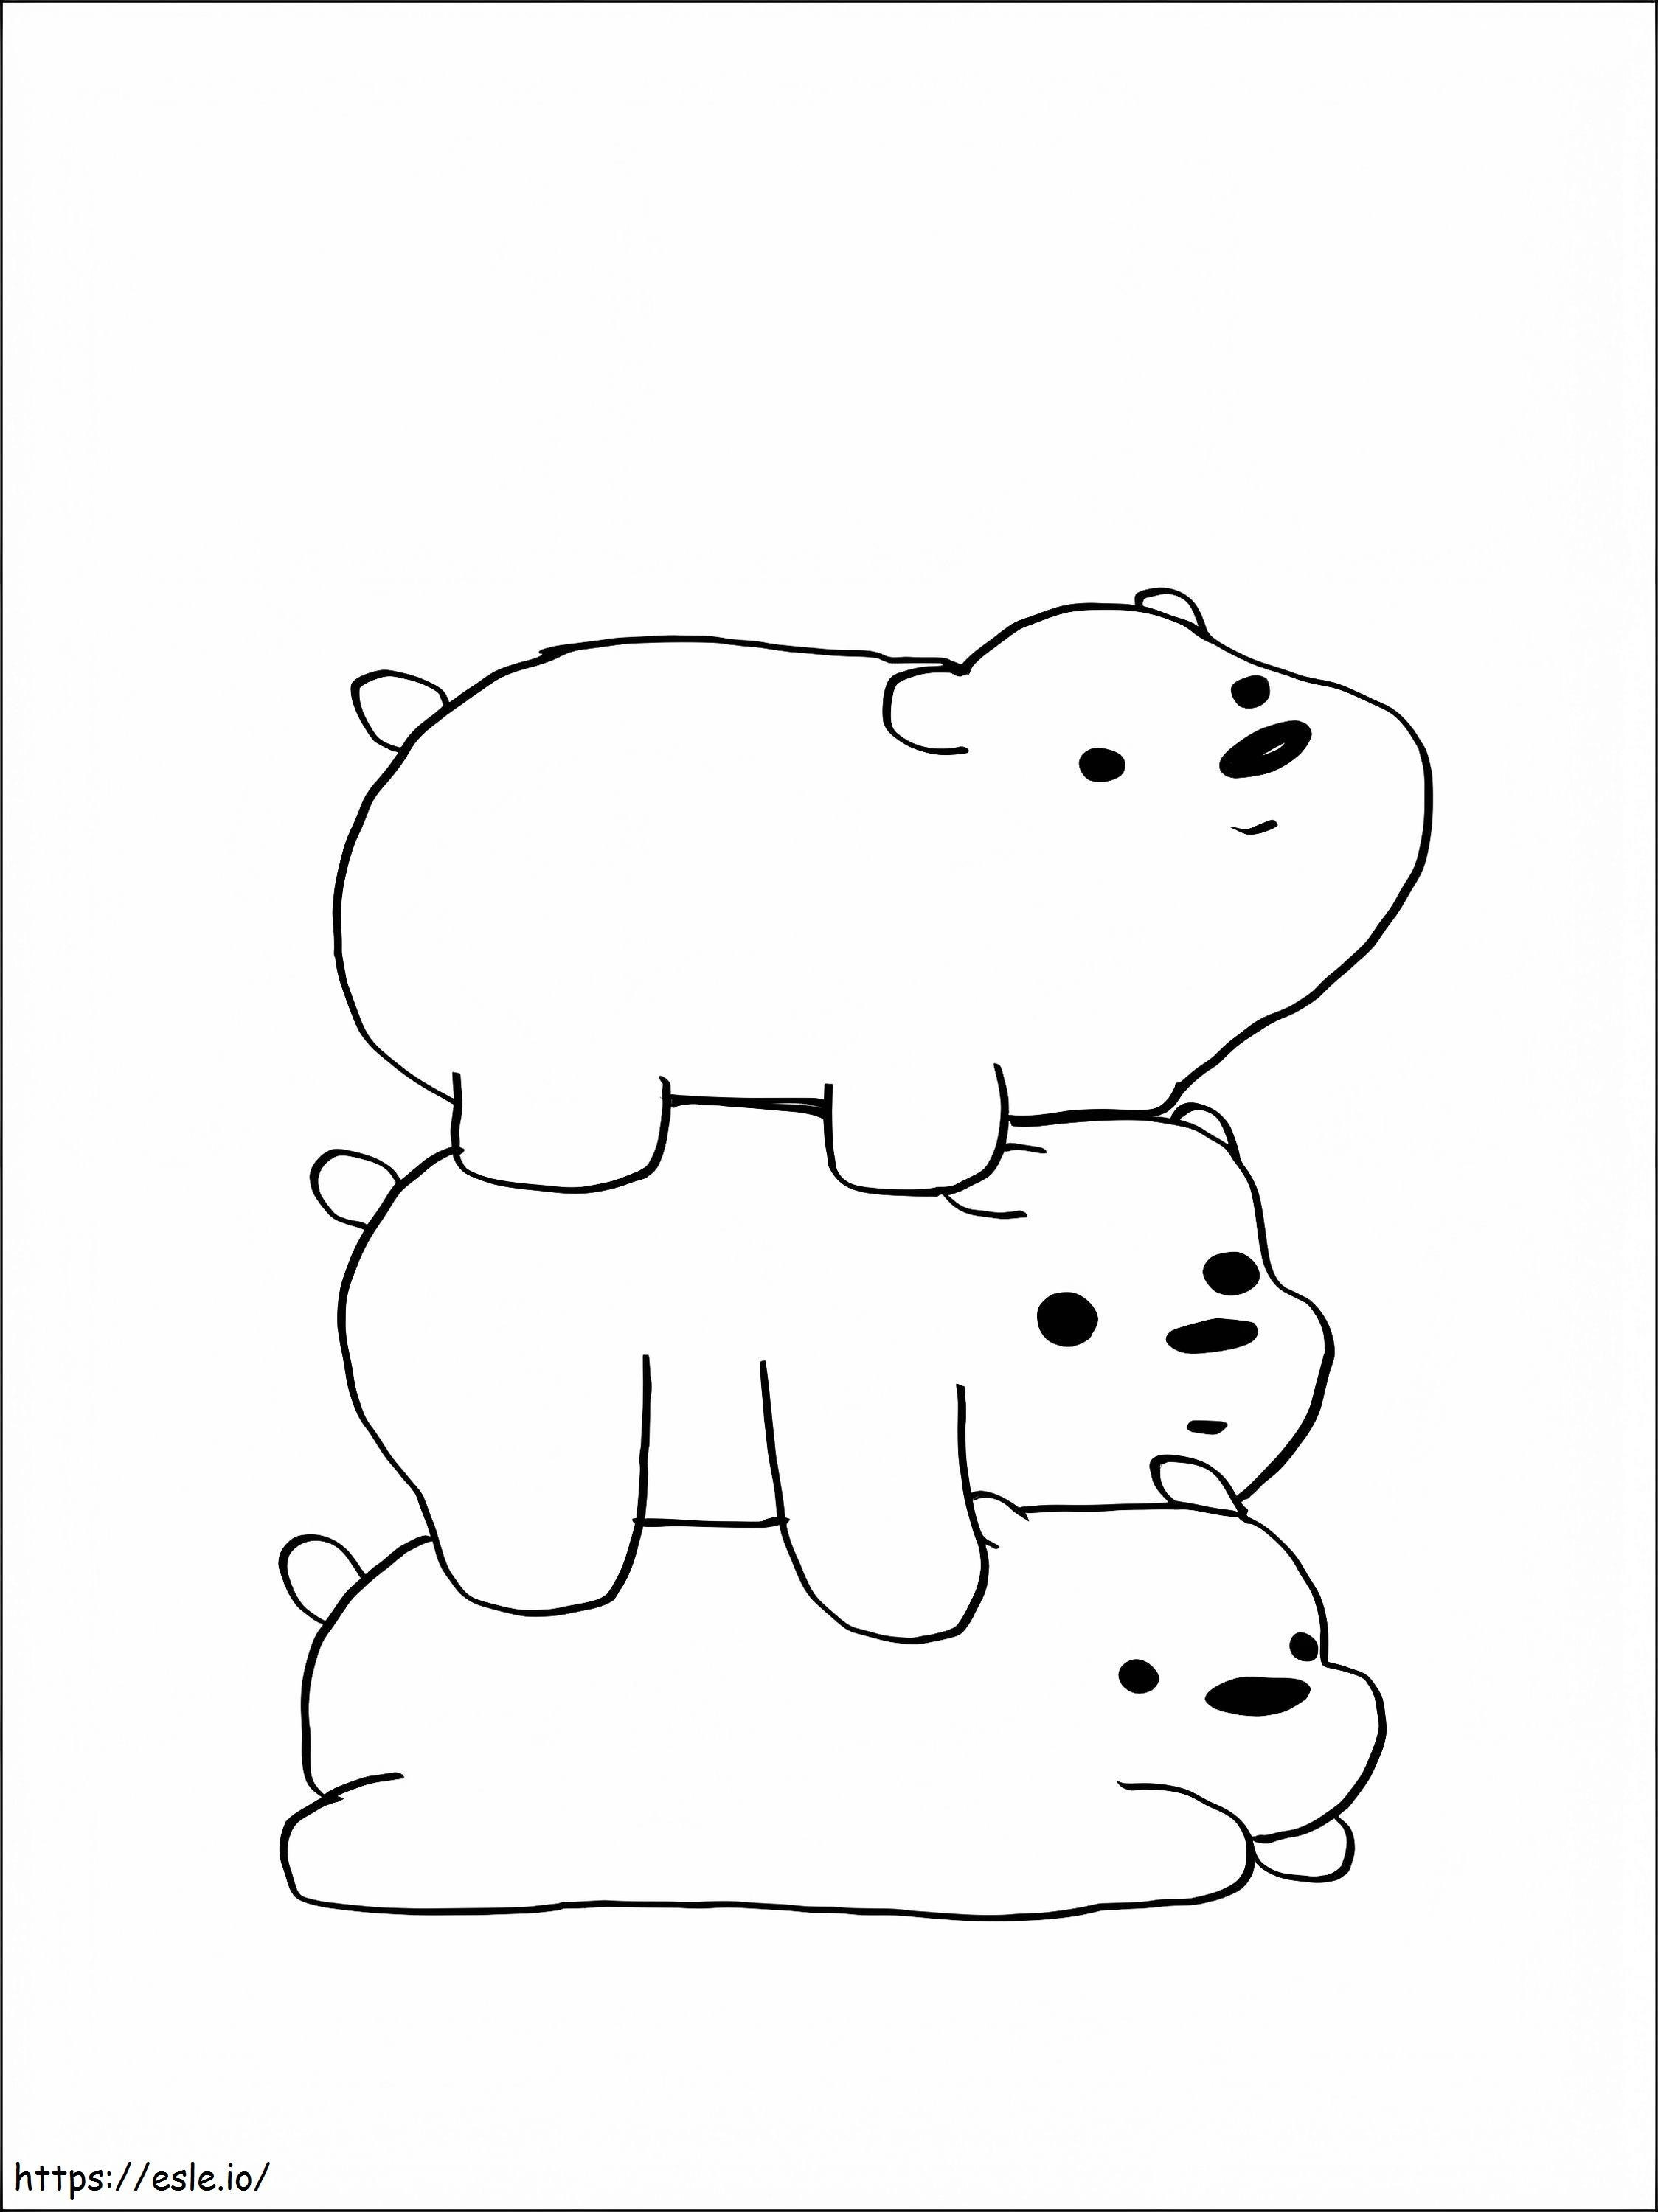 Drei liegende Bären ausmalbilder